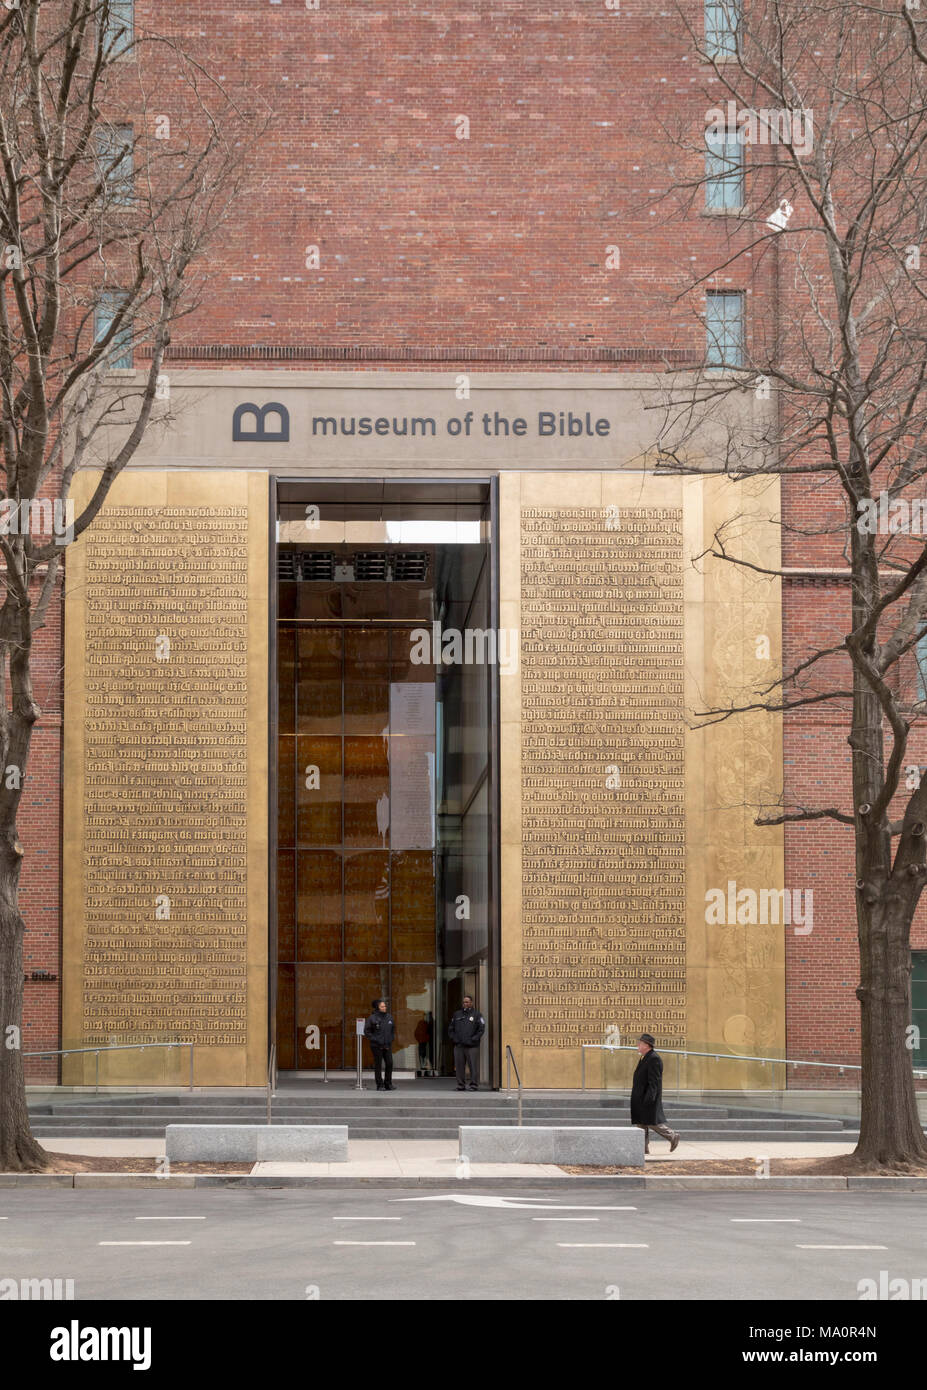 Washington, DC - ingresso al Museo della Bibbia. Il 40-piede alte porte in bronzo portano la creazione storia dalla Genesi, sin dalla prima edizione o Foto Stock